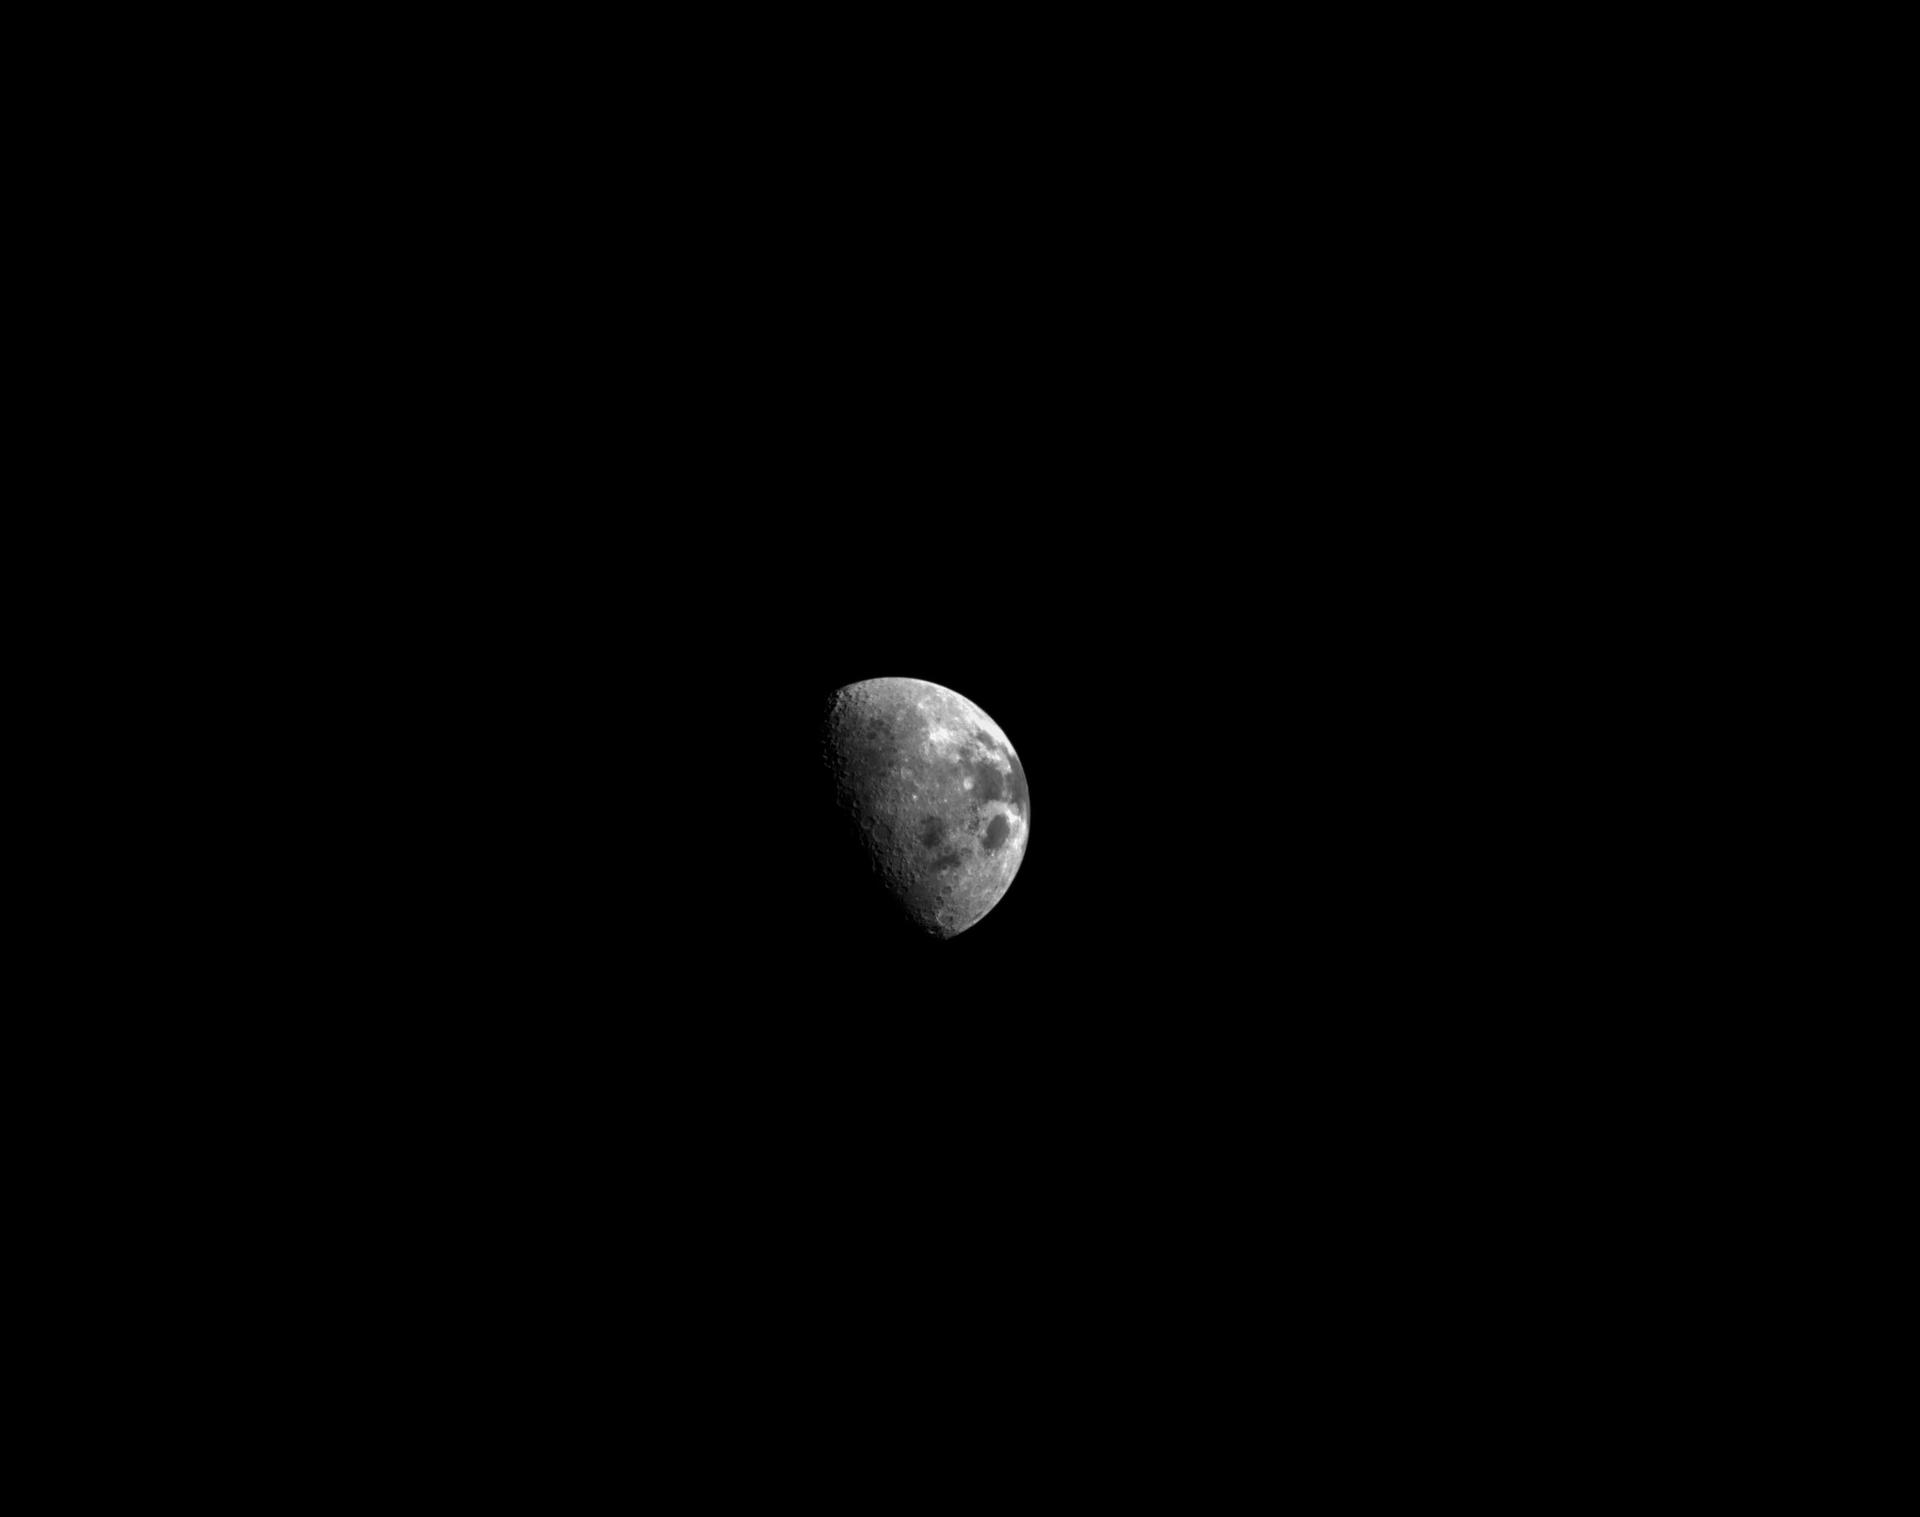 El día 21 de la misión Artemis I de la NASA, la cámara de navegación óptica de Orion miró hacia atrás a la luna.